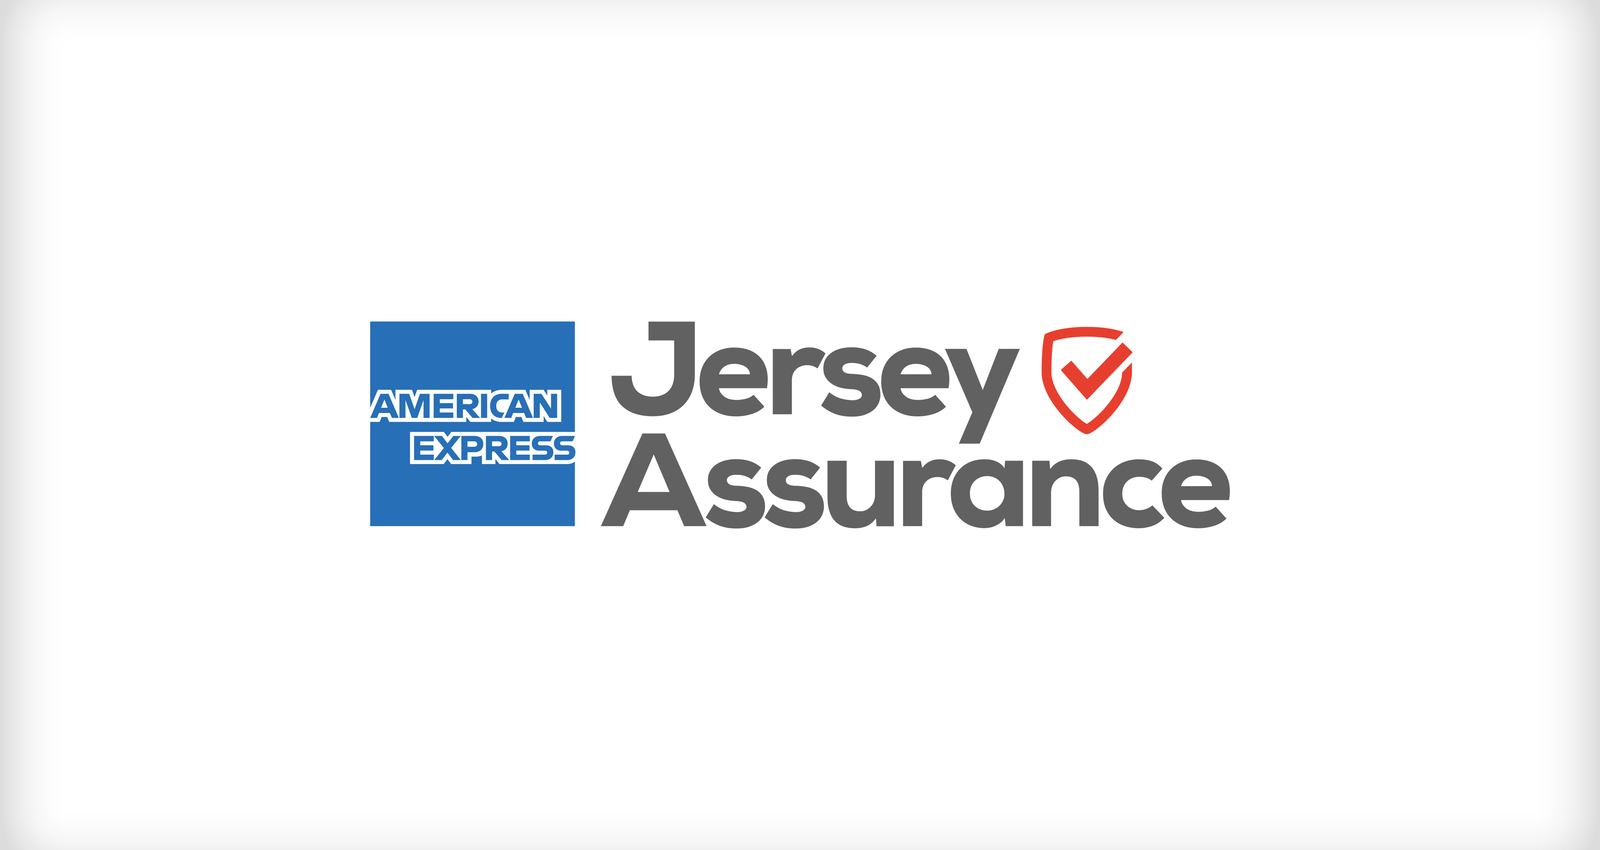 American Express Jersey Assurance